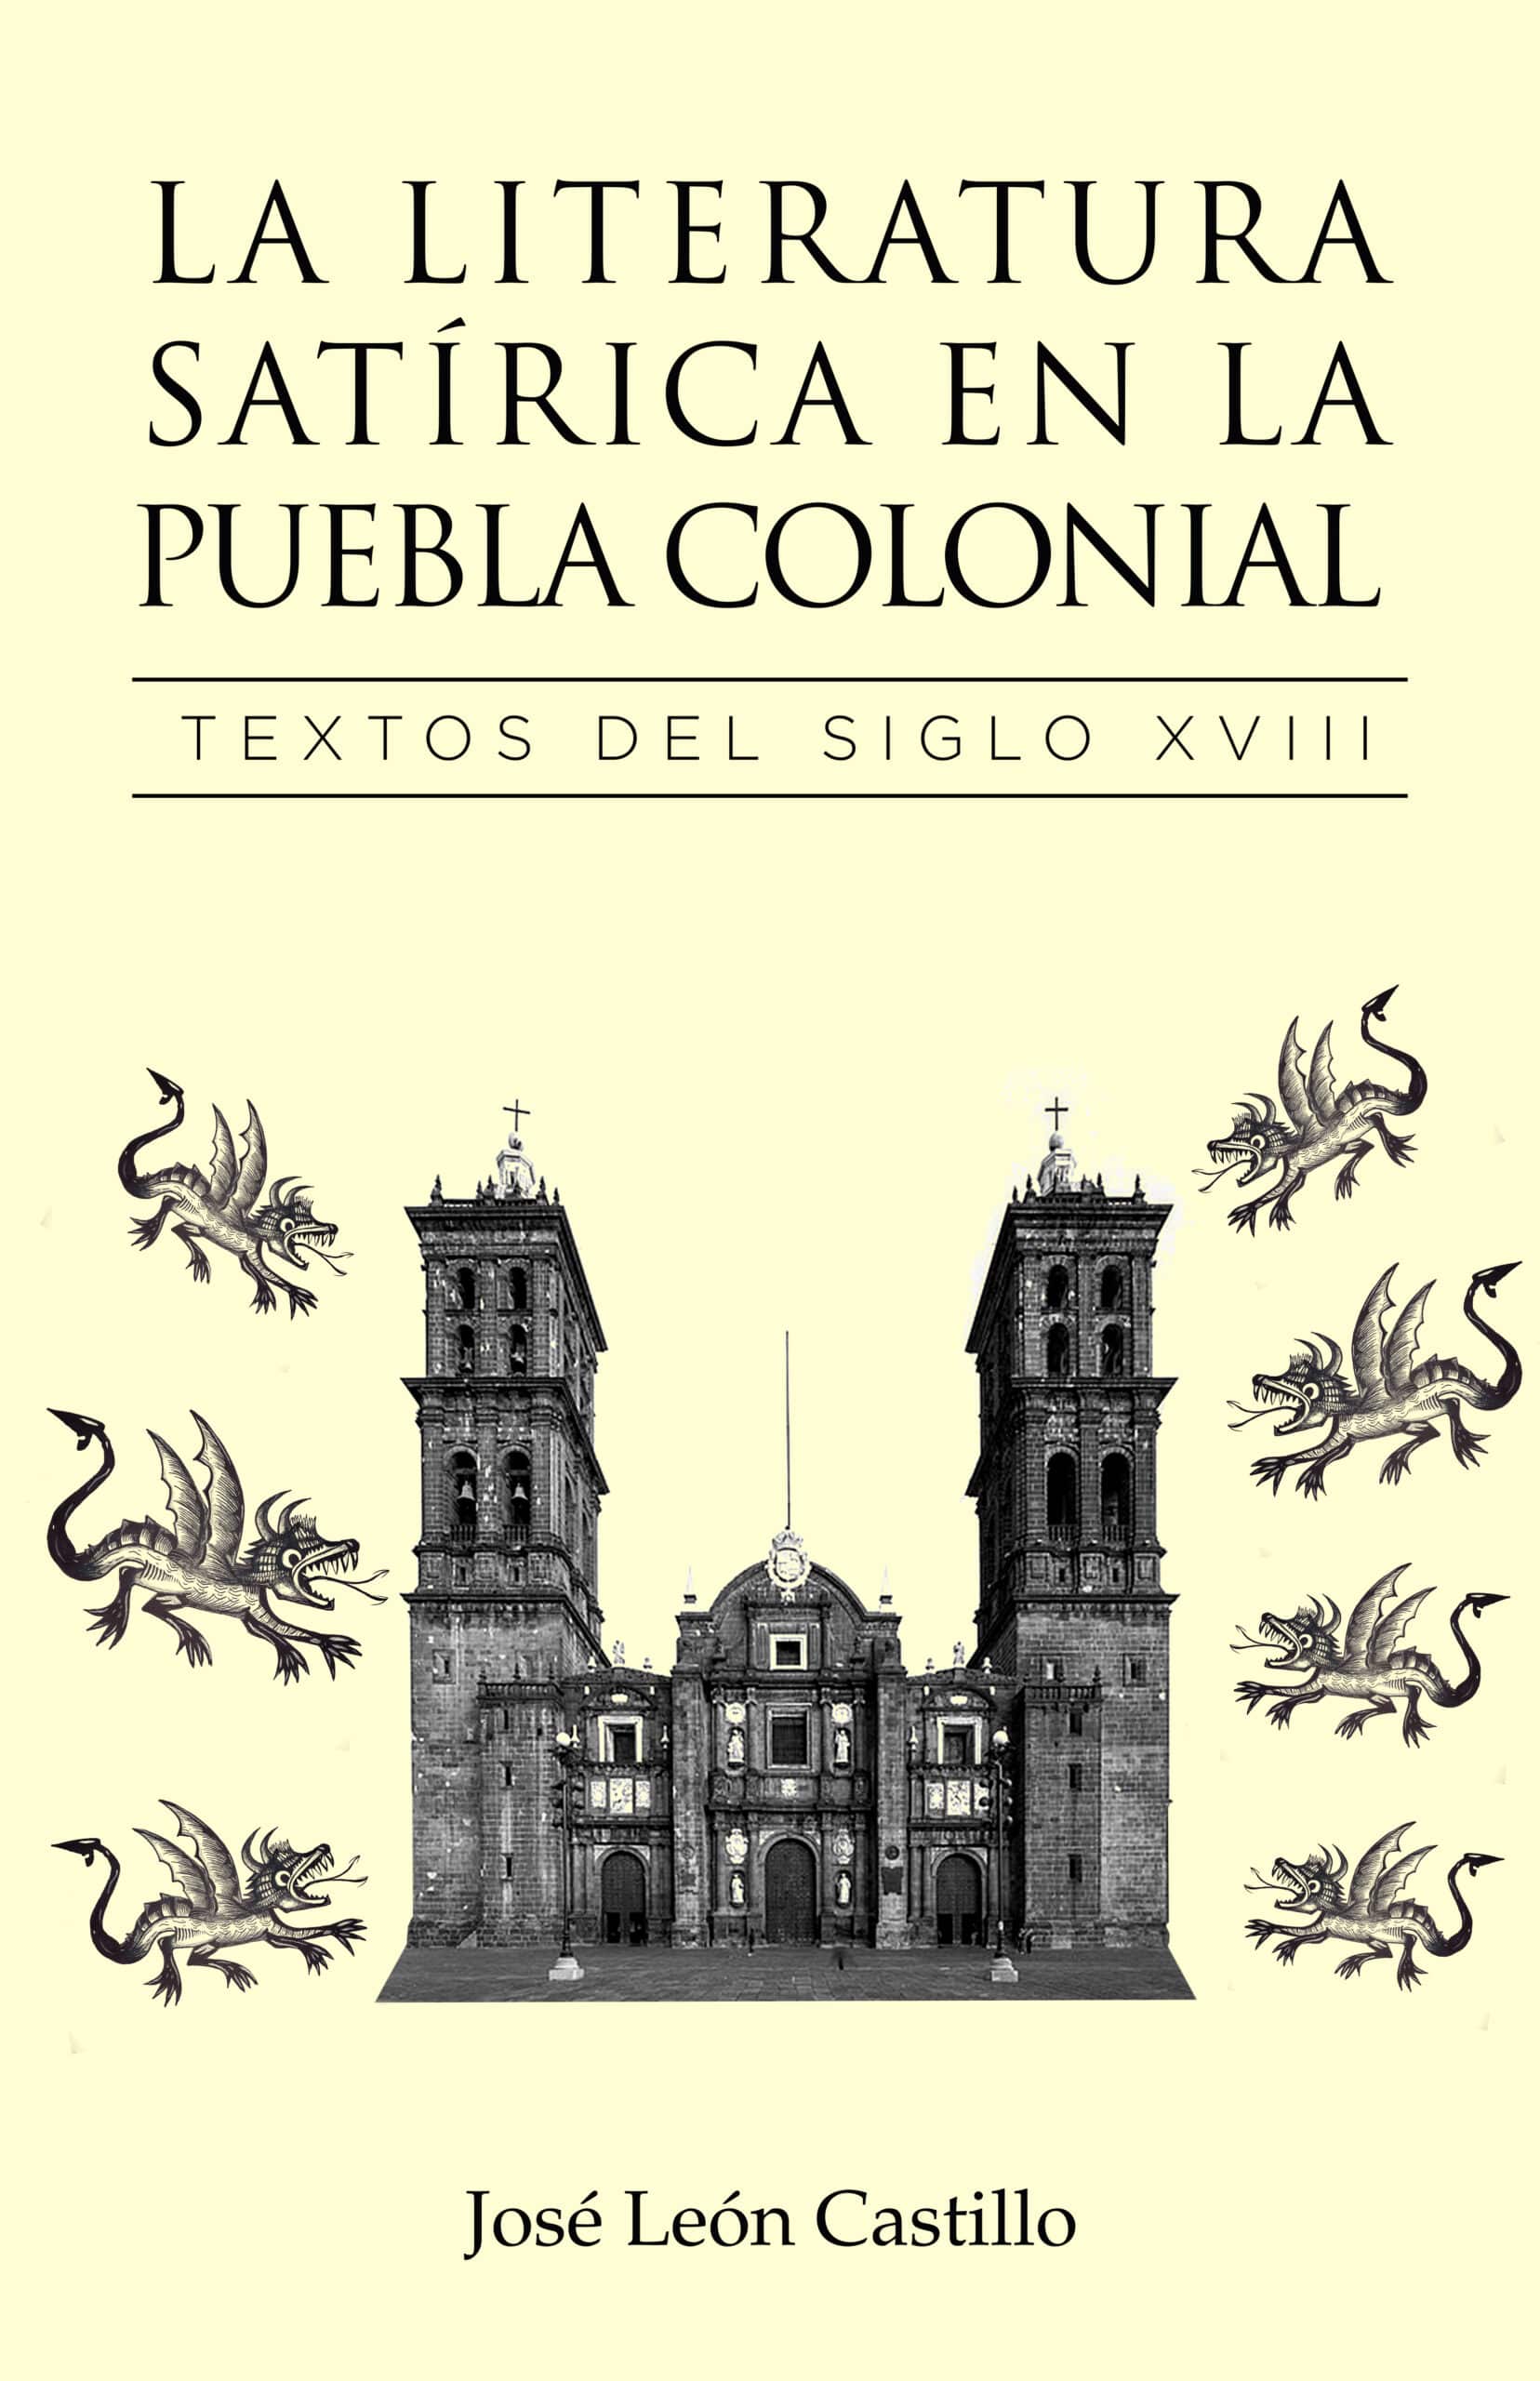 La literatura satírica en la puebla colonial, de José León Castillo